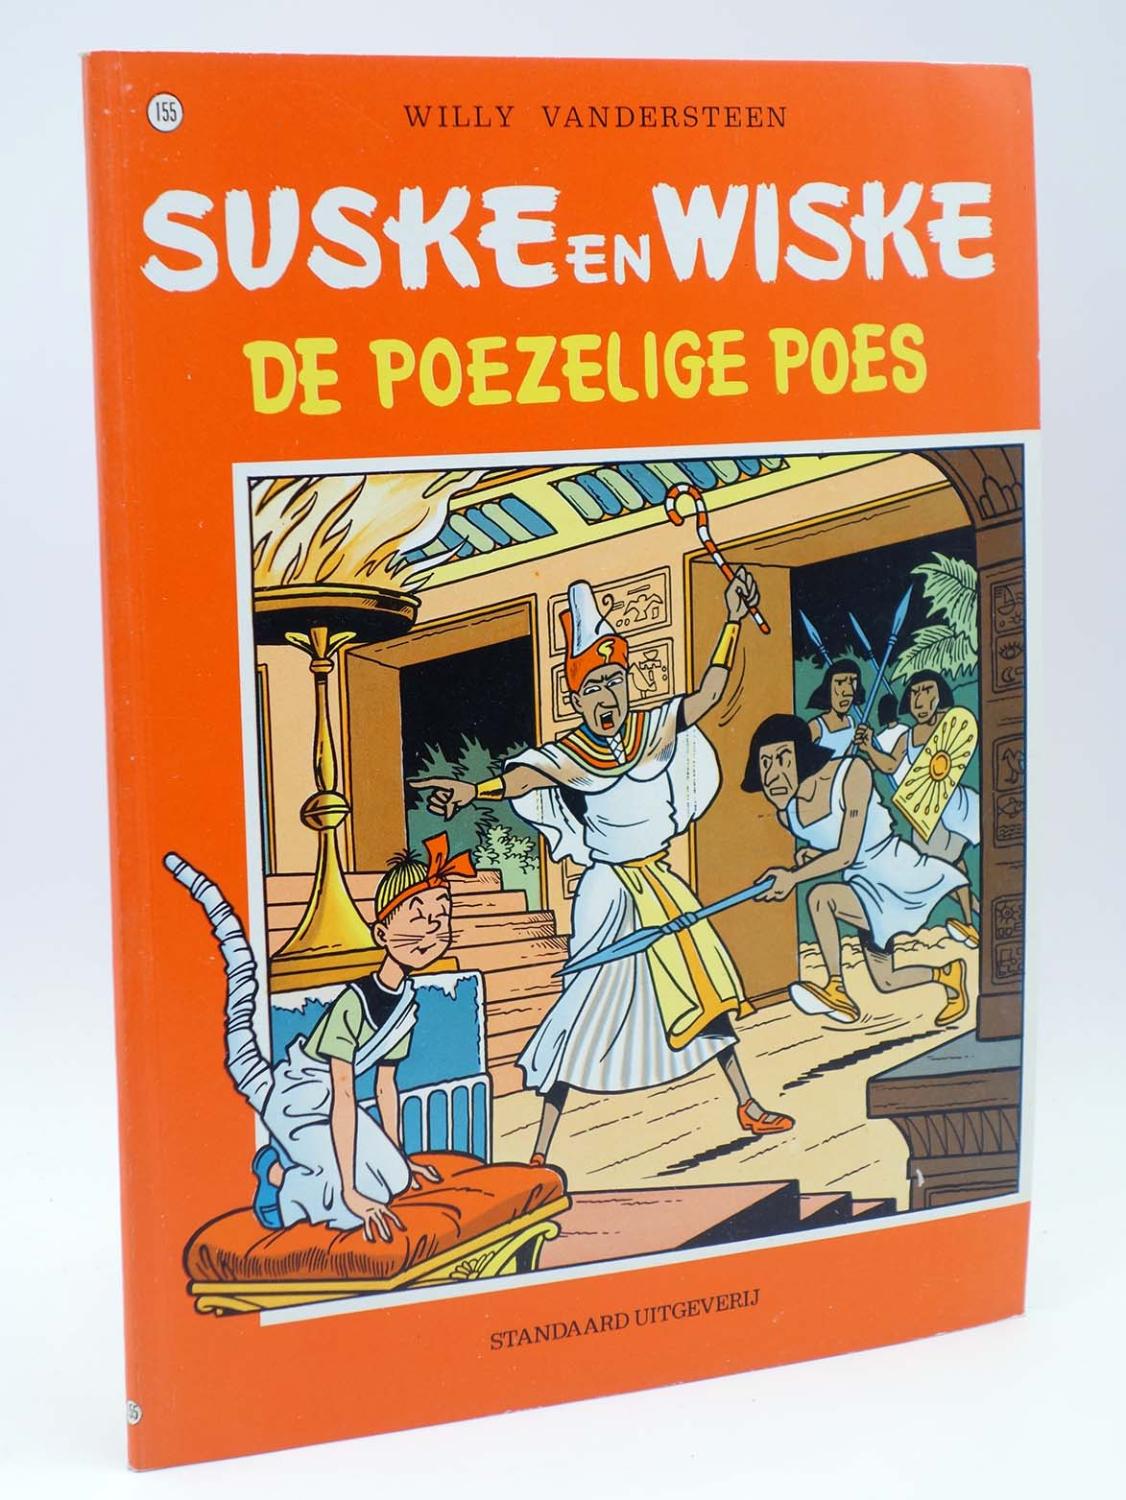 SUSKE EN WISKE 155. DE POEZELIGE POES (Willy Vandersteen), 1996. LÍNEA CLARA. EN BELGA - Willy Vandersteen